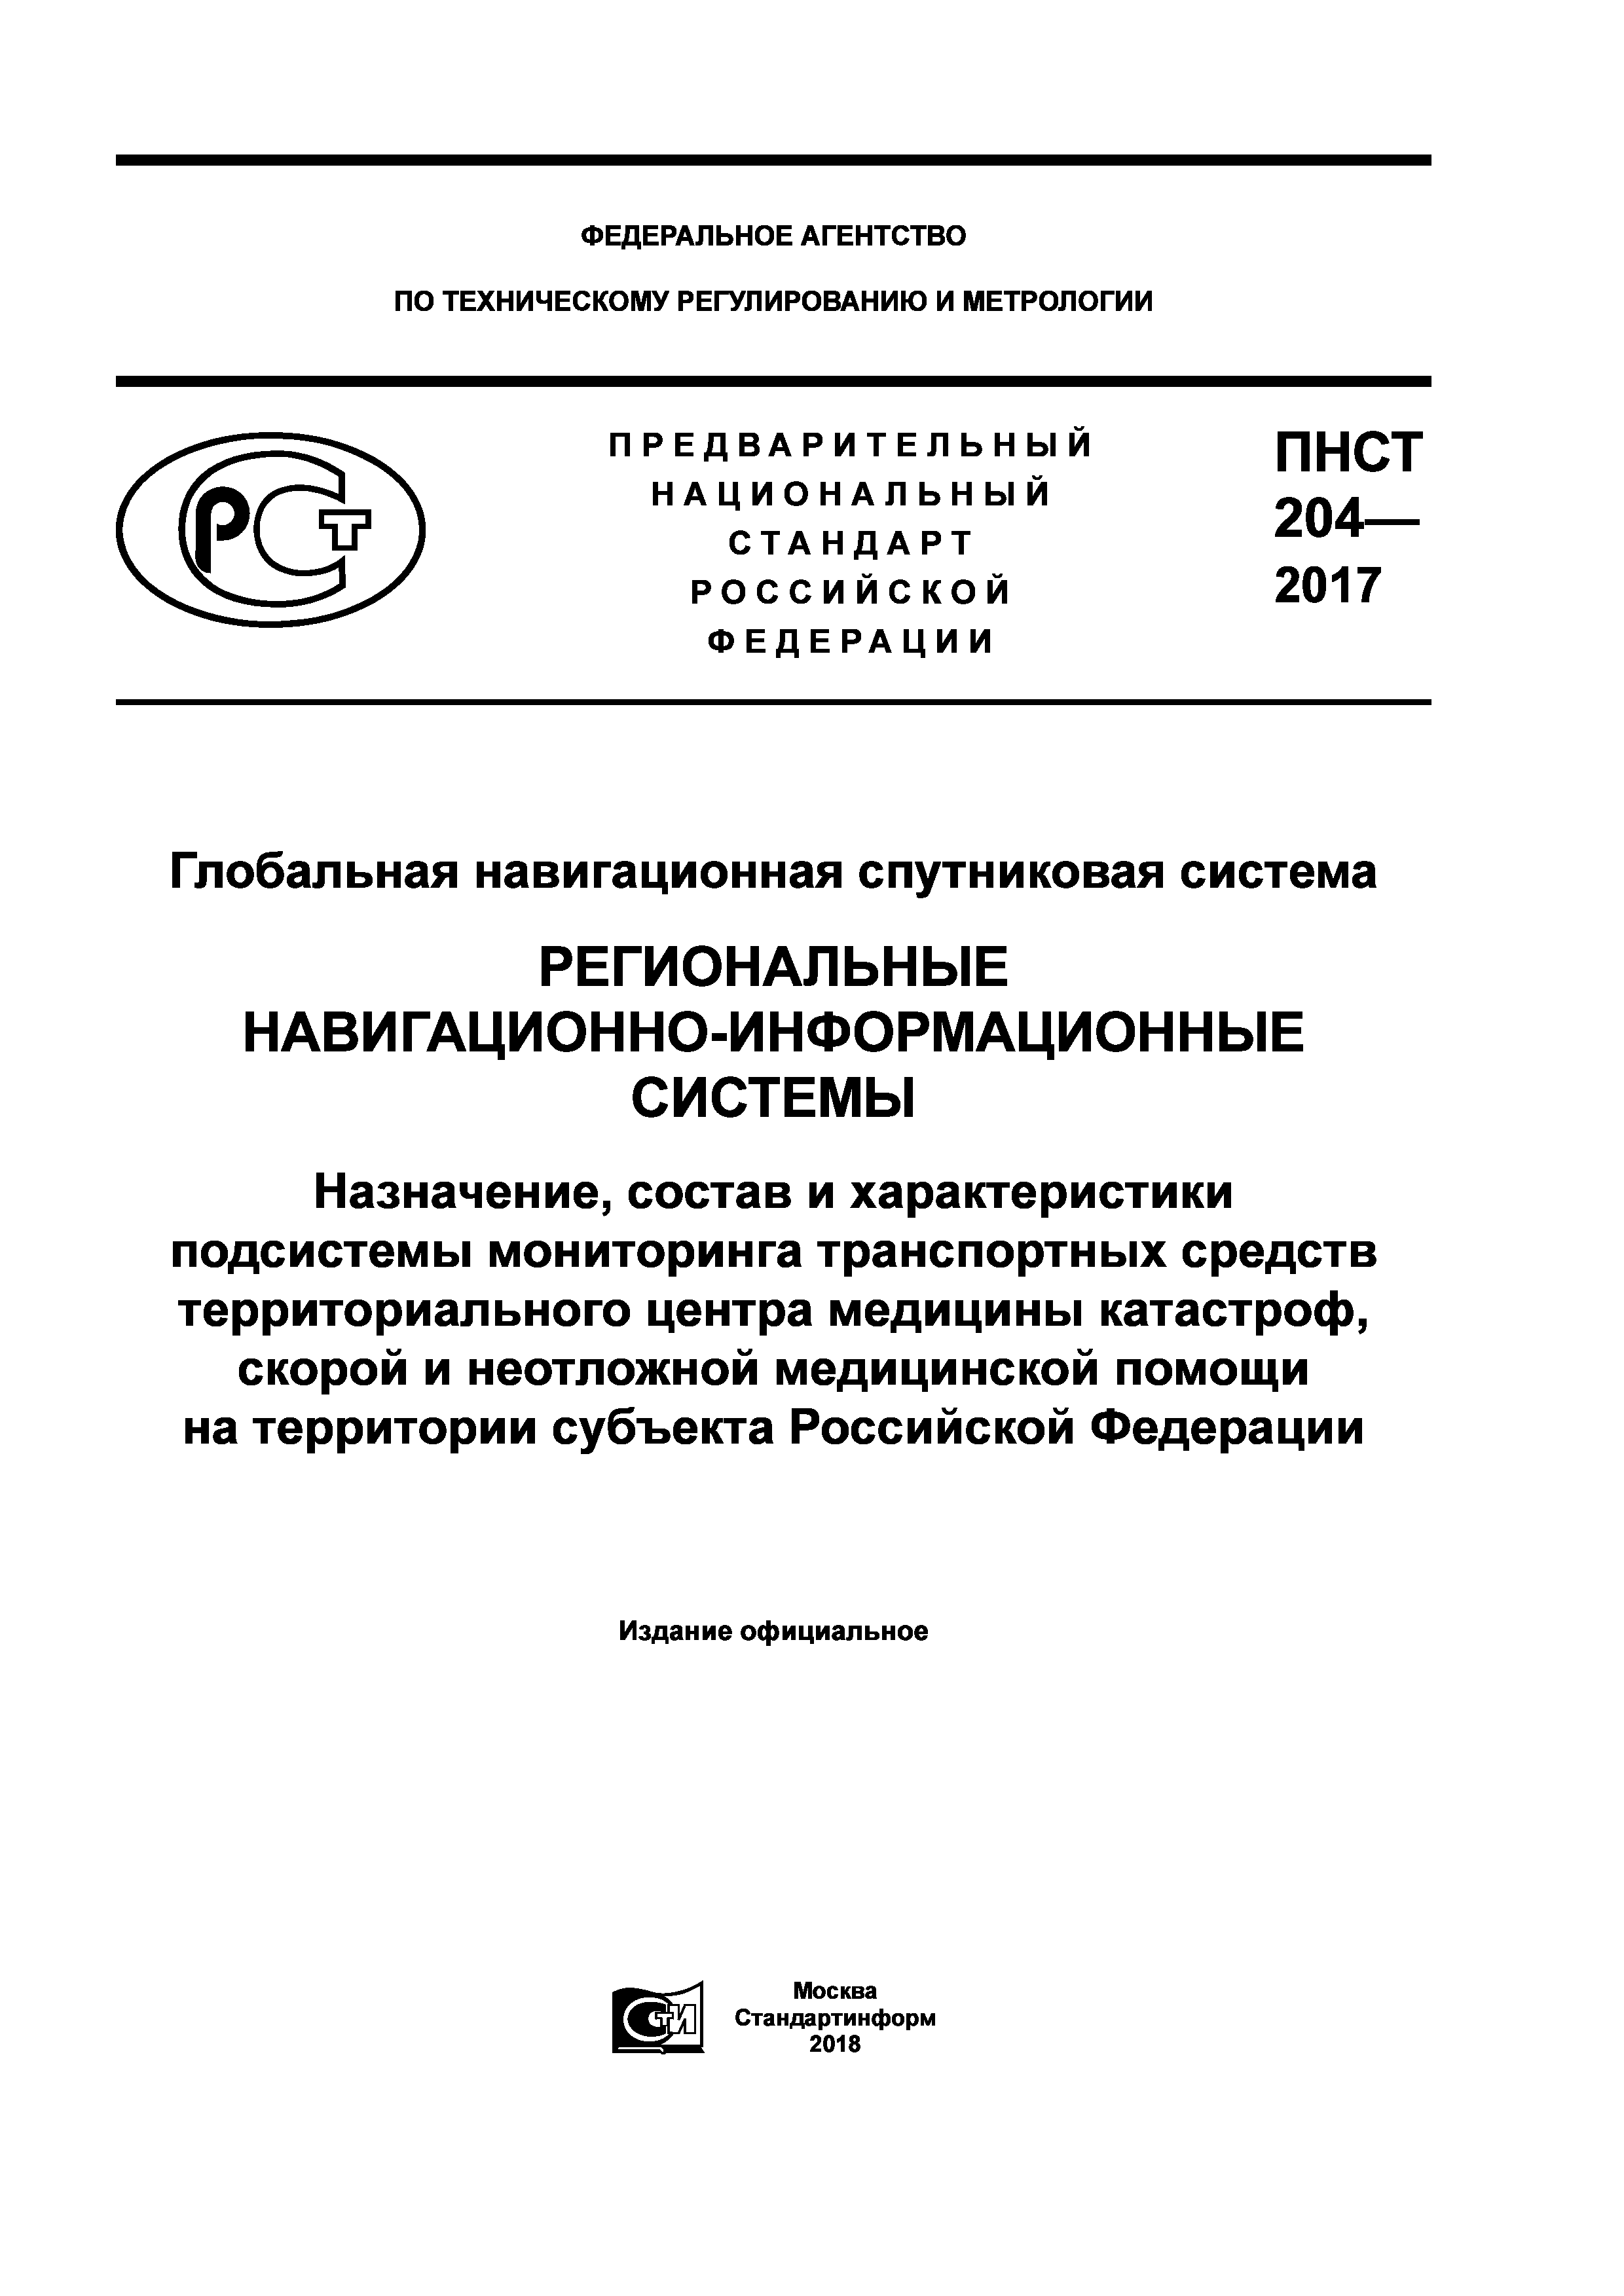 ПНСТ 204-2017